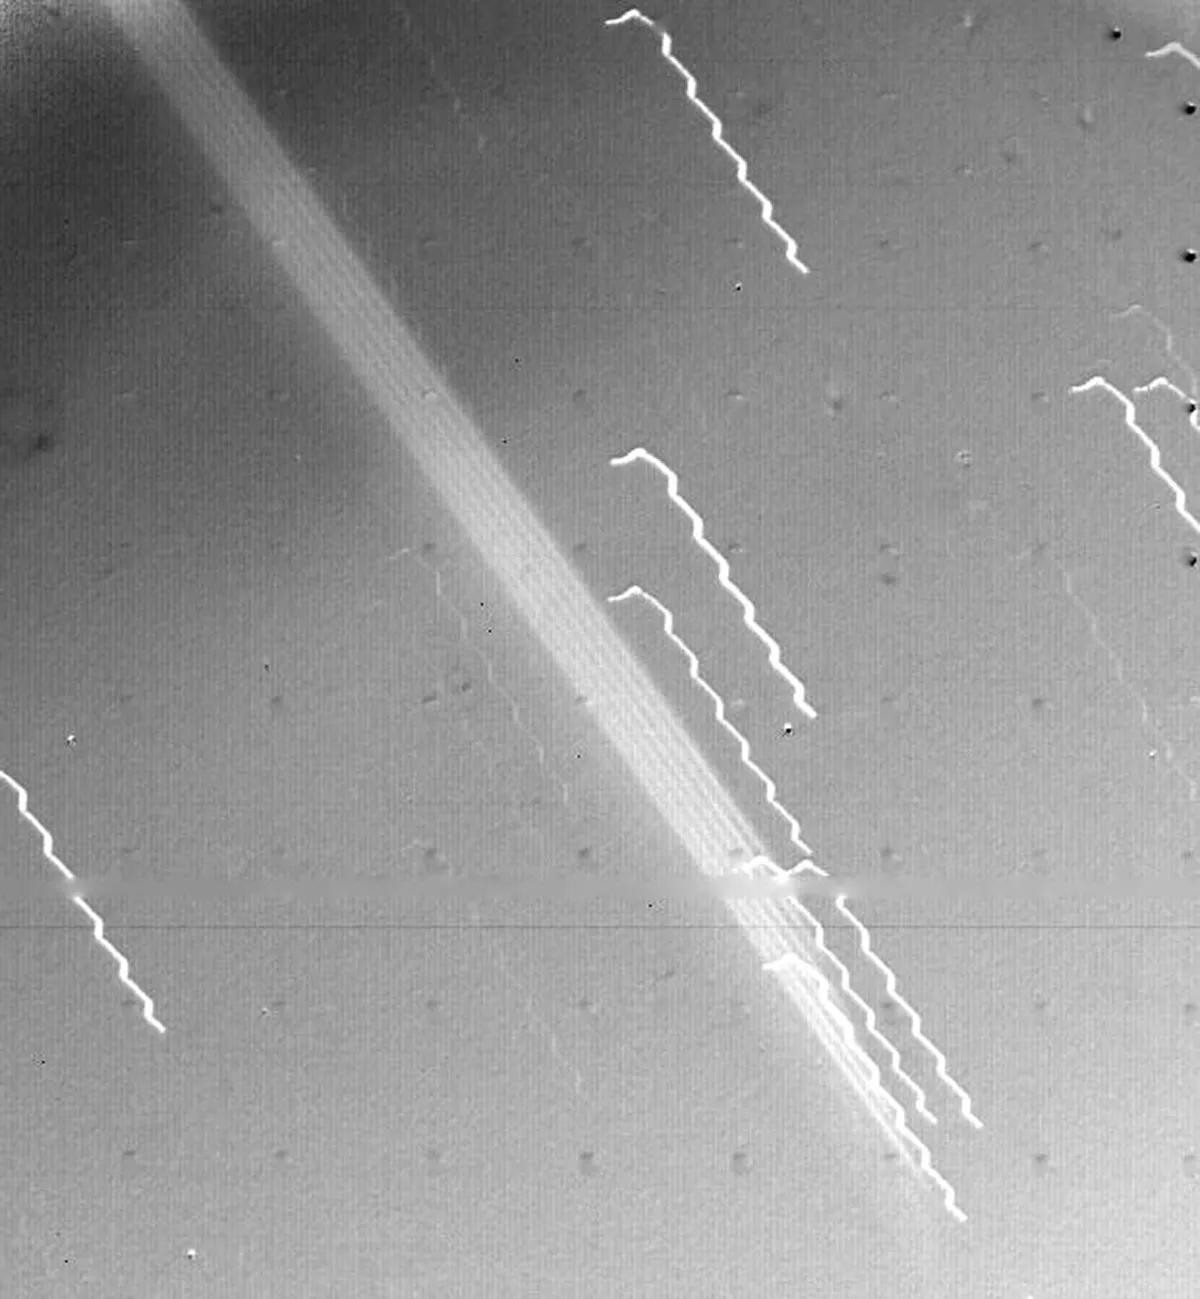 La amplia banda de luz que cruza diagonalmente el centro de esta imagen es la primera evidencia de los anillos de Júpiter, vista por la nave espacial Voyager 1 el 4 de marzo de 1979. El borde del anillo estaba a 1.212.000 km de la nave espacial y a 57.000 km del visible nube.  Cubierta de Júpiter.  Las líneas inestables son estrellas de fondo cuya apariencia se ve afectada por el movimiento de la nave espacial.  Crédito: NASA/JPL